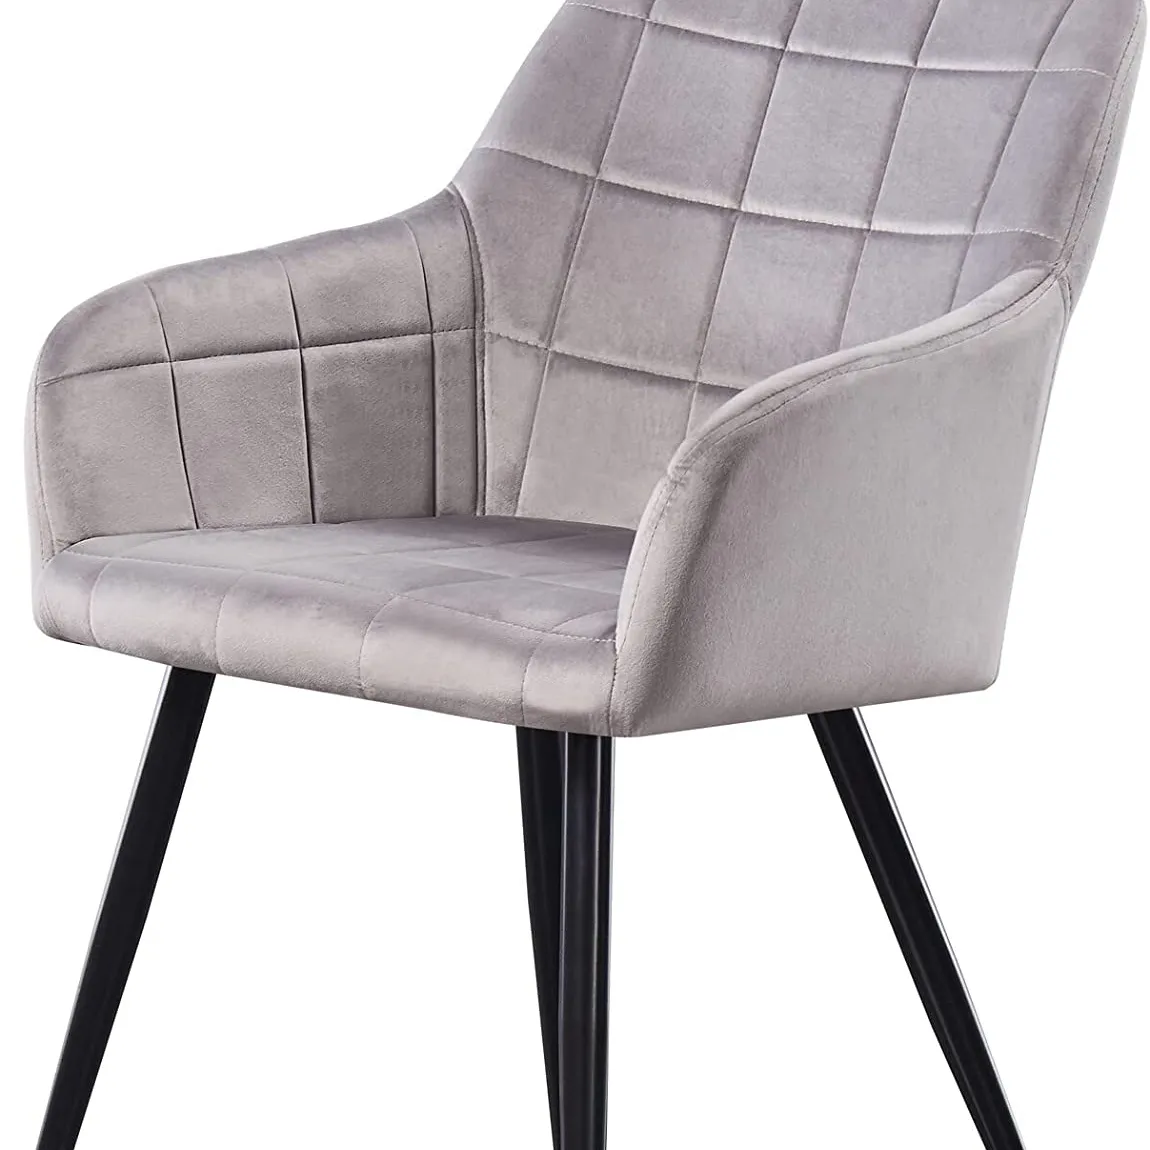 Blue Velvet Metal Leg Low Armrest Dining Chair for dining room or living room